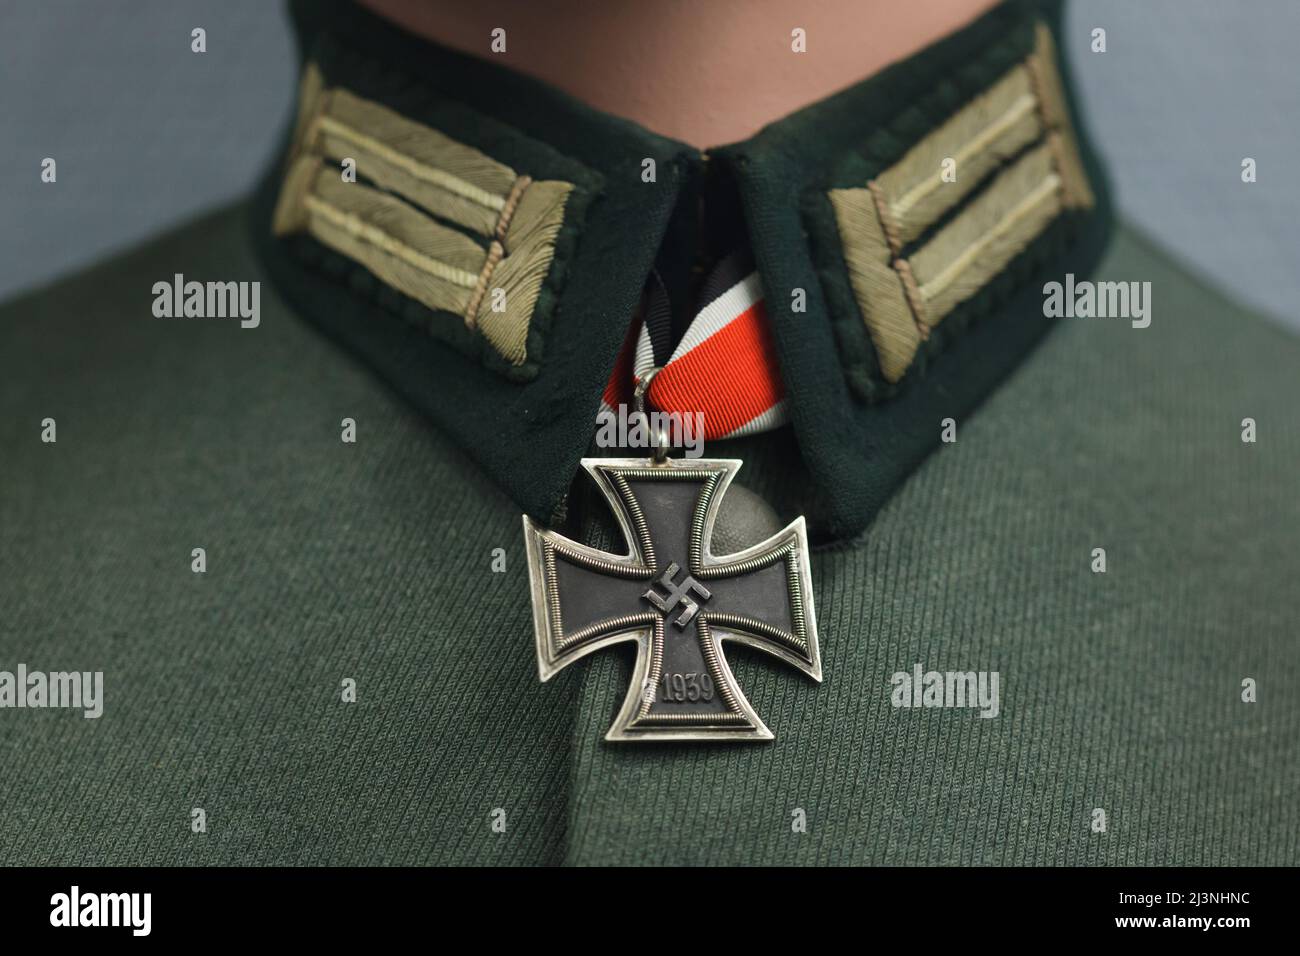 Grande Croix de la Croix de fer (Großkreuz des Eisernen Kreuzes) en date de 1939 fixée sur l'uniforme d'un uniforme allemand exposé au Musée de la capitulation (Musée de la Redition) à Reims, France. Banque D'Images